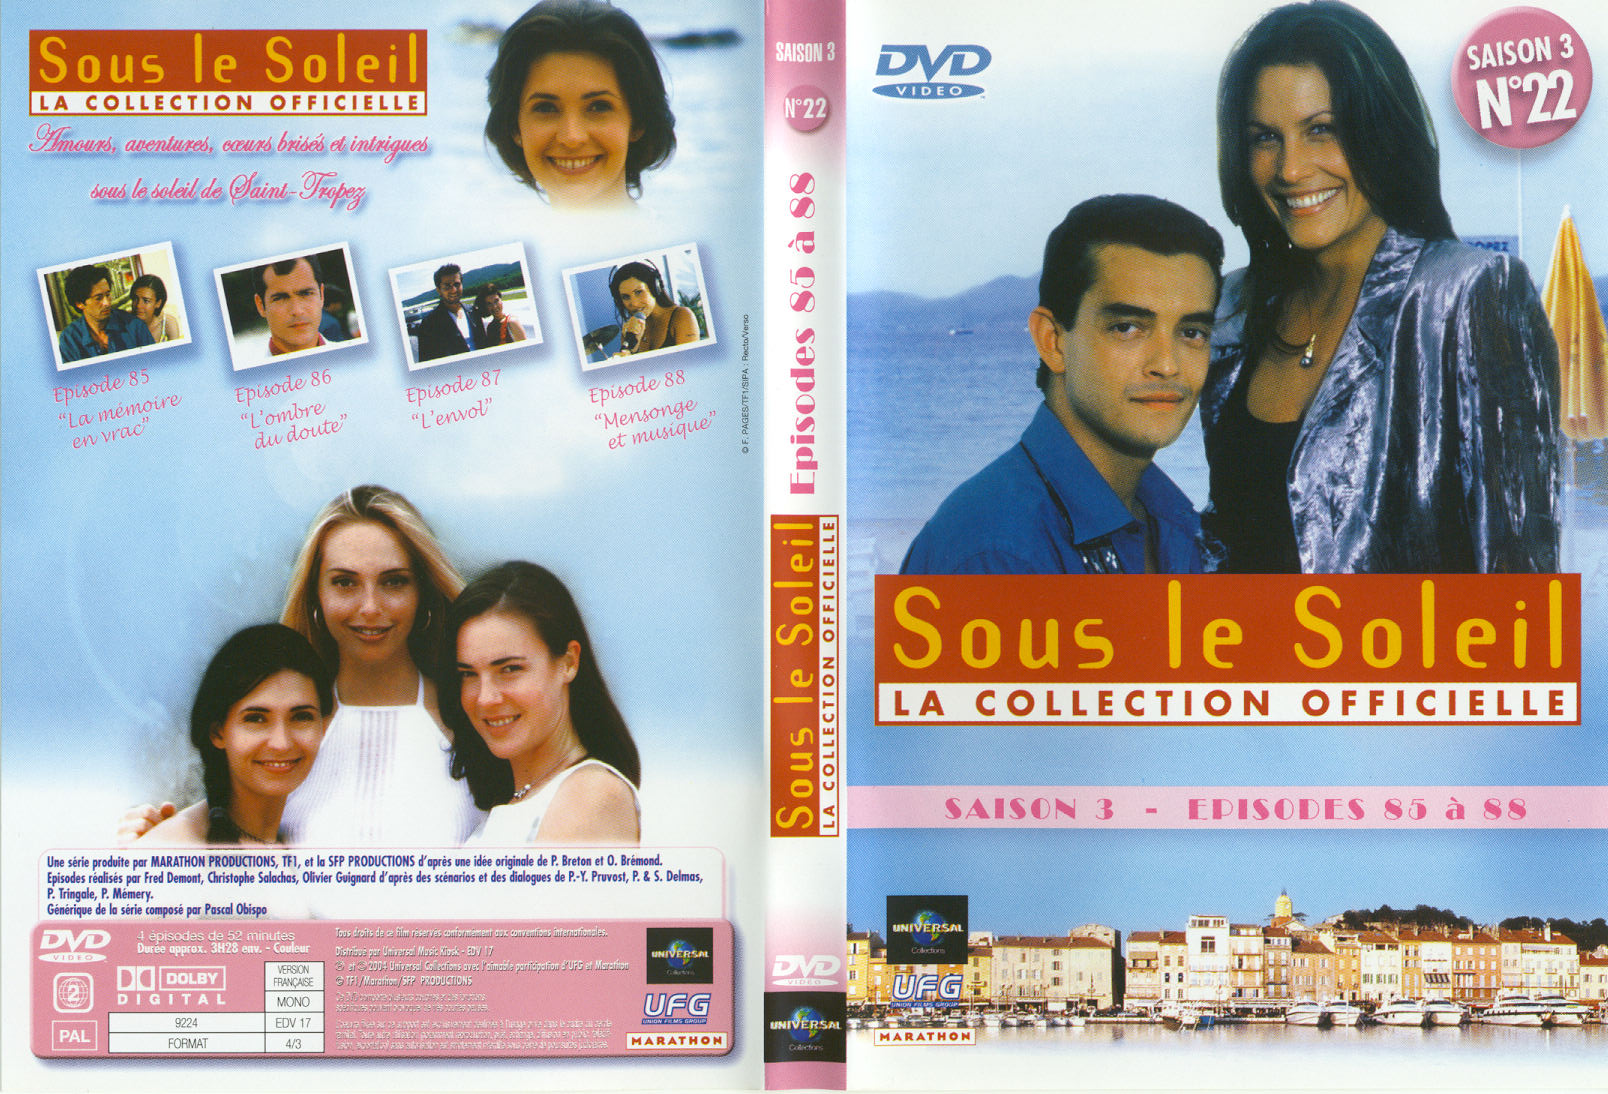 Jaquette DVD Sous le soleil saison 3 vol 22